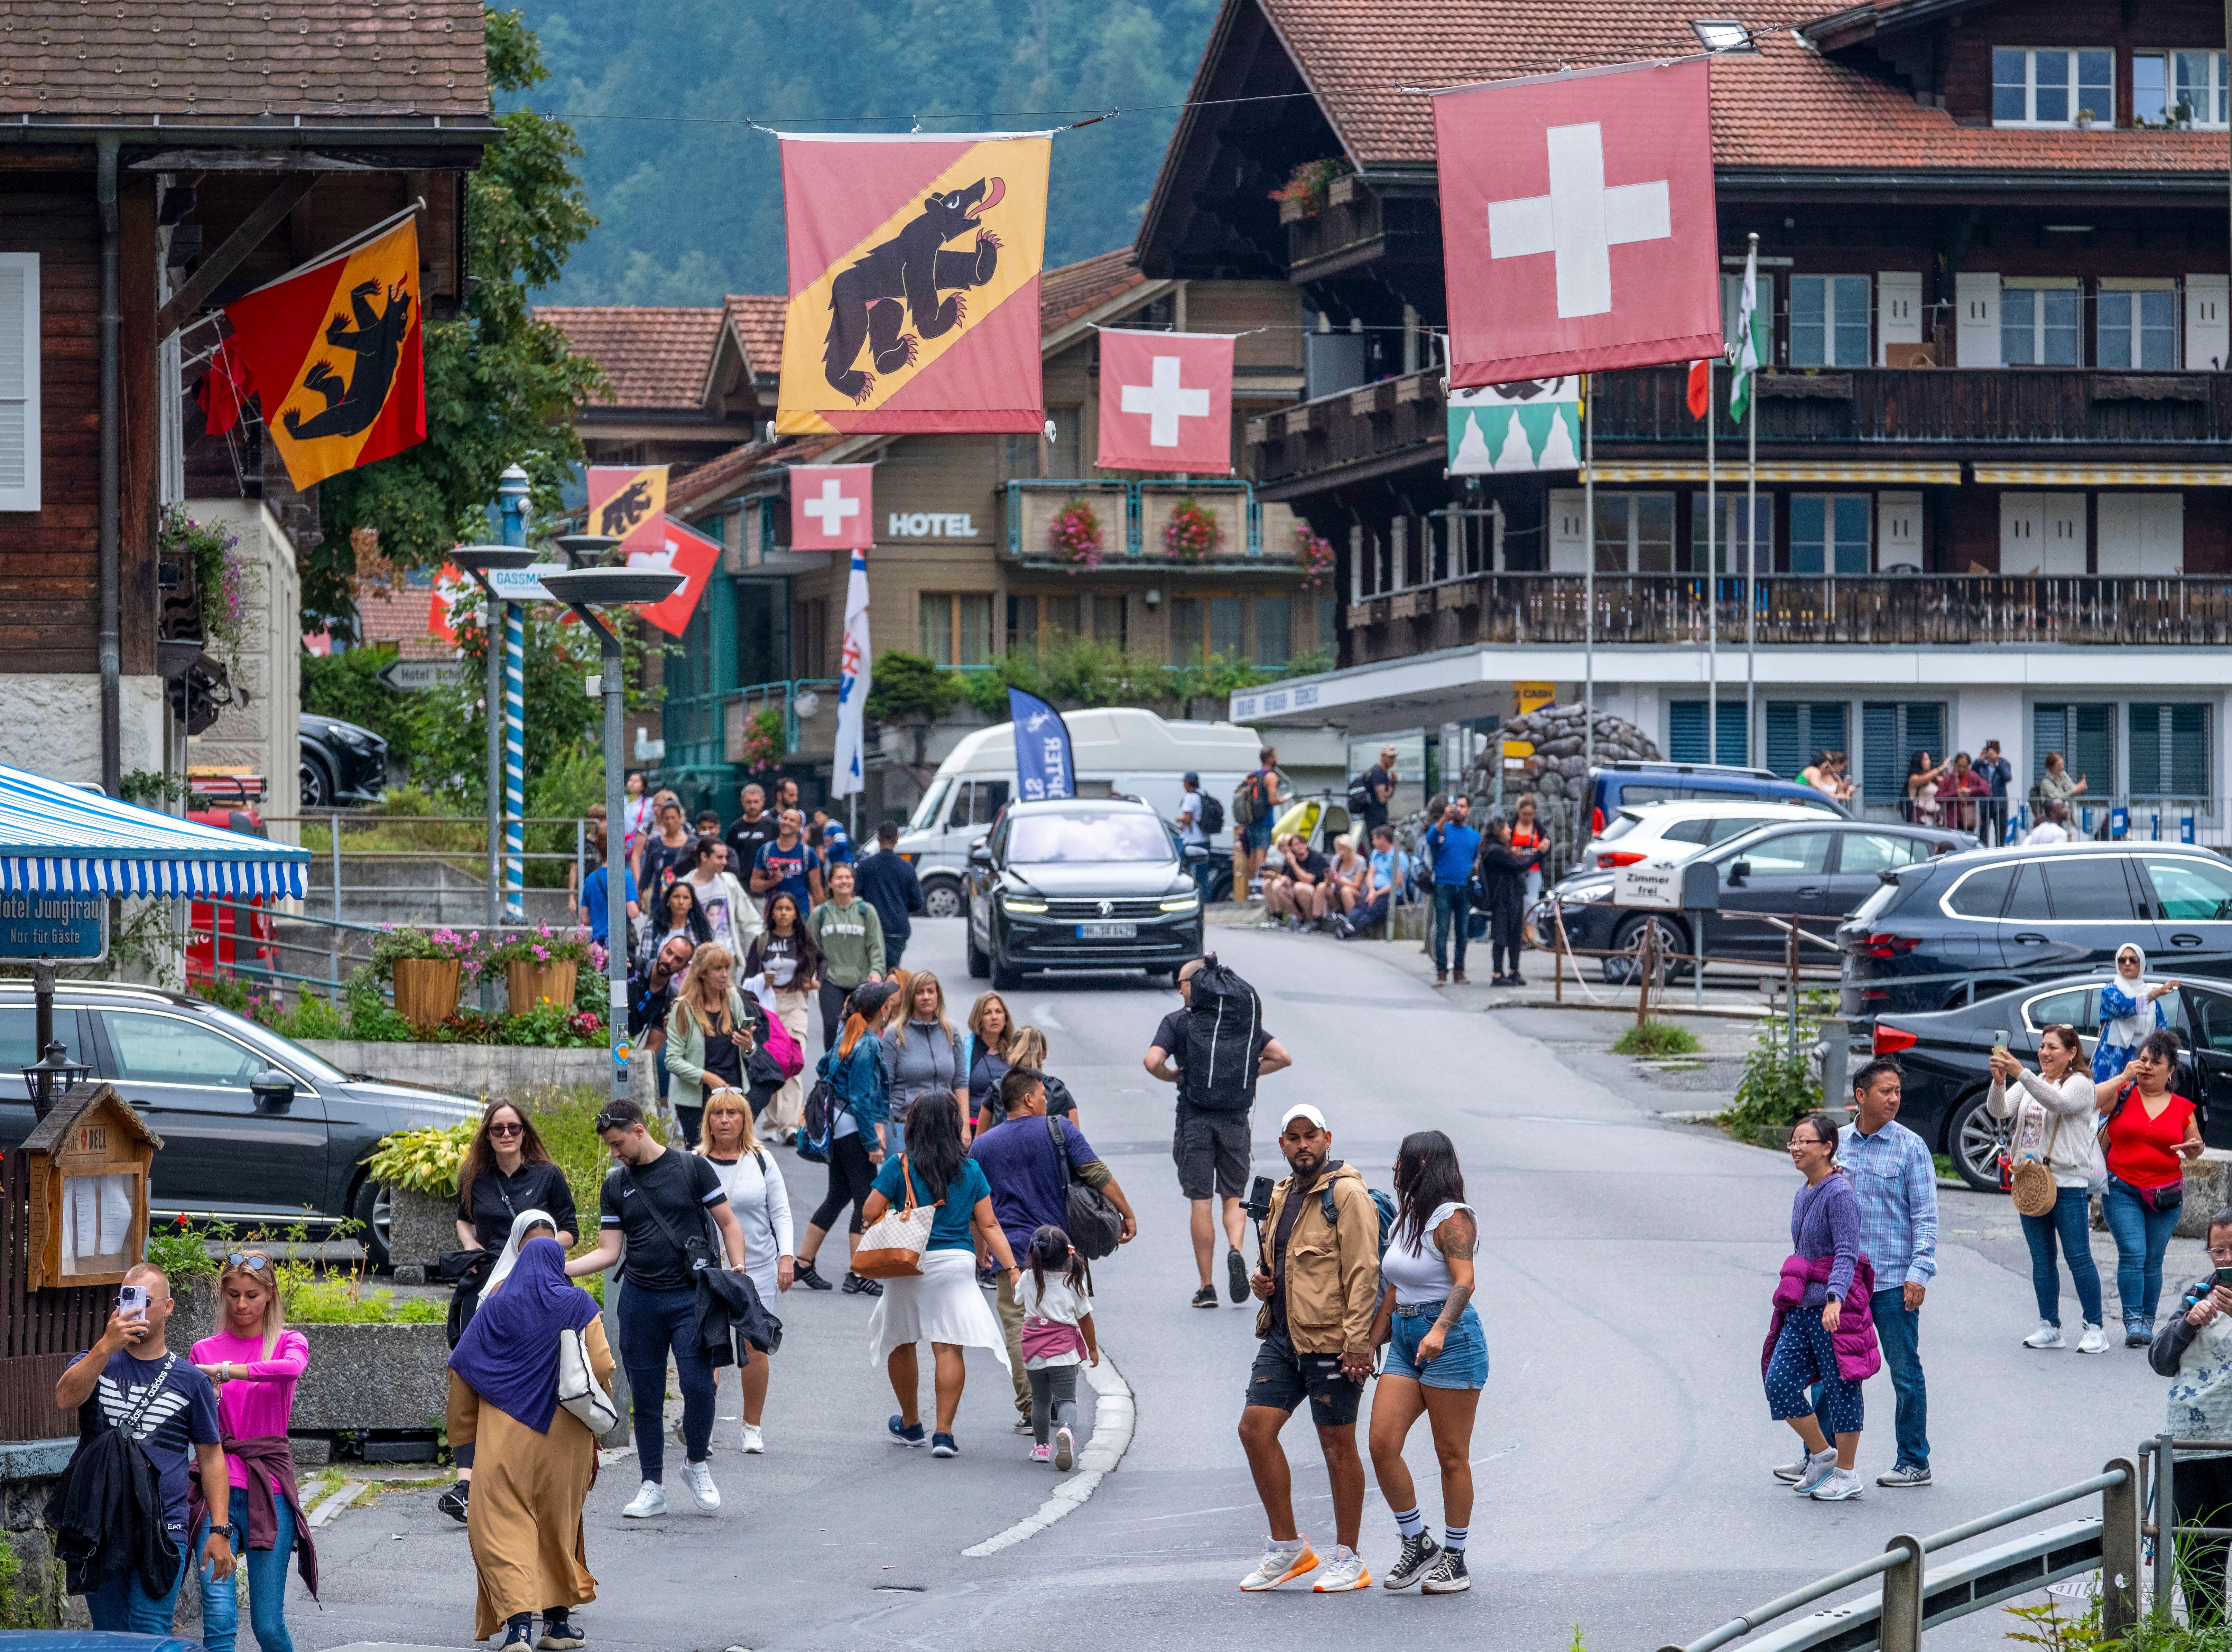 Lauterbrunnen ist mit seiner atemberaubenden Landschaft, Sehenswürdigkeiten wie dem Staubachfall und dem Zauber der Alpen eines der beliebtesten Reiseziele in der Schweiz.  Doch das kleine Bergdorf zieht weiterhin immer mehr Touristen an.